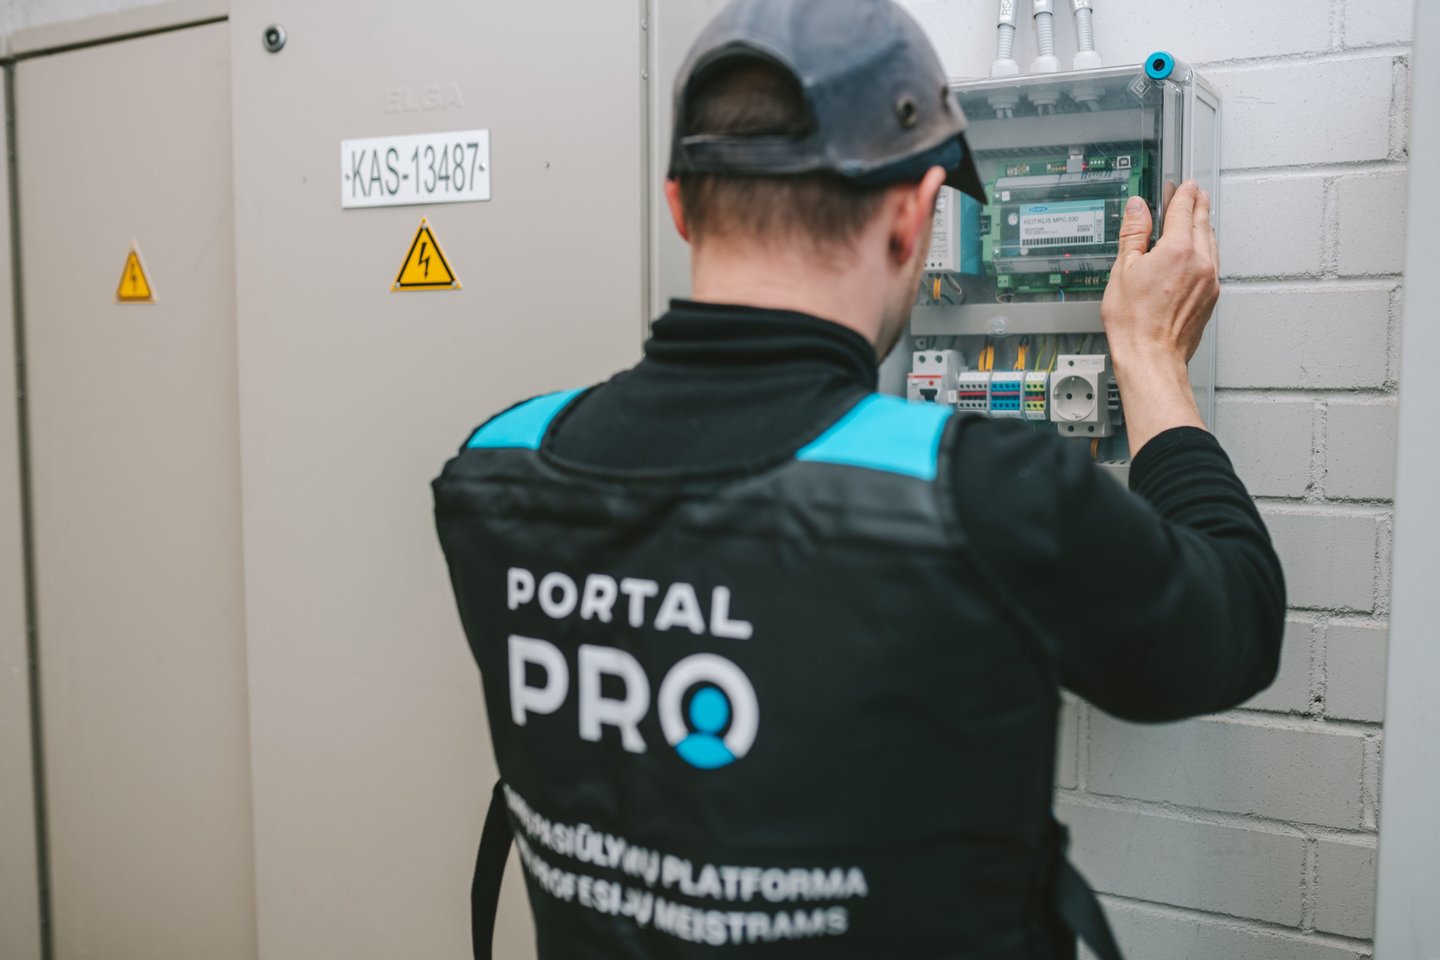 Naujausių informacinių technologijų sprendimais grįsta „PortalPRO“ yra didžiausia Lietuvoje sistema, kuri vienija skaidraus ir gero uždarbio ieškančius meistrus.